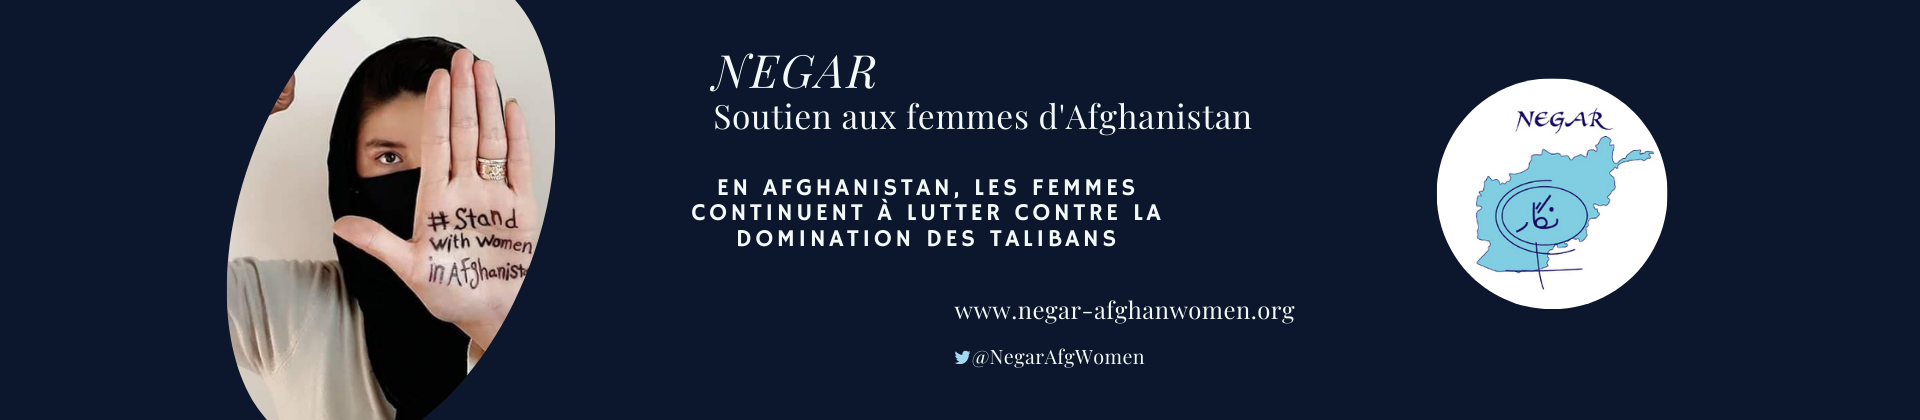 APPEL DE NEGAR – SOUTIEN AUX FEMMES D’AFGHANISTAN